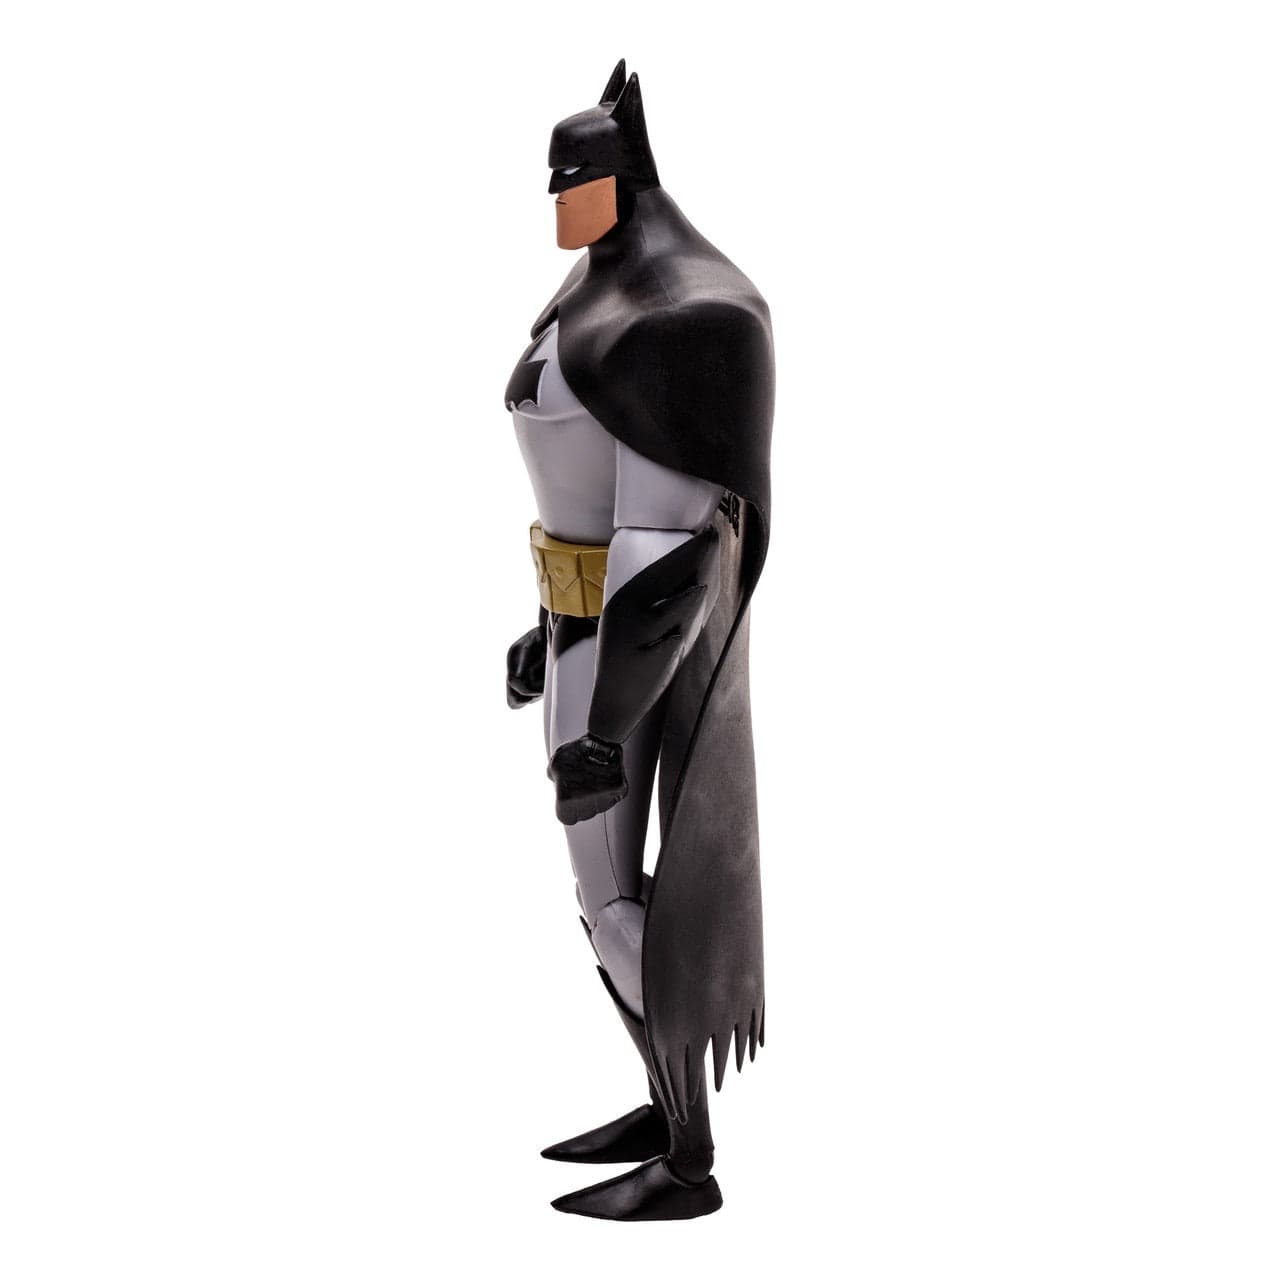 DC Direct The New Batman Adventures Batman Action Figure